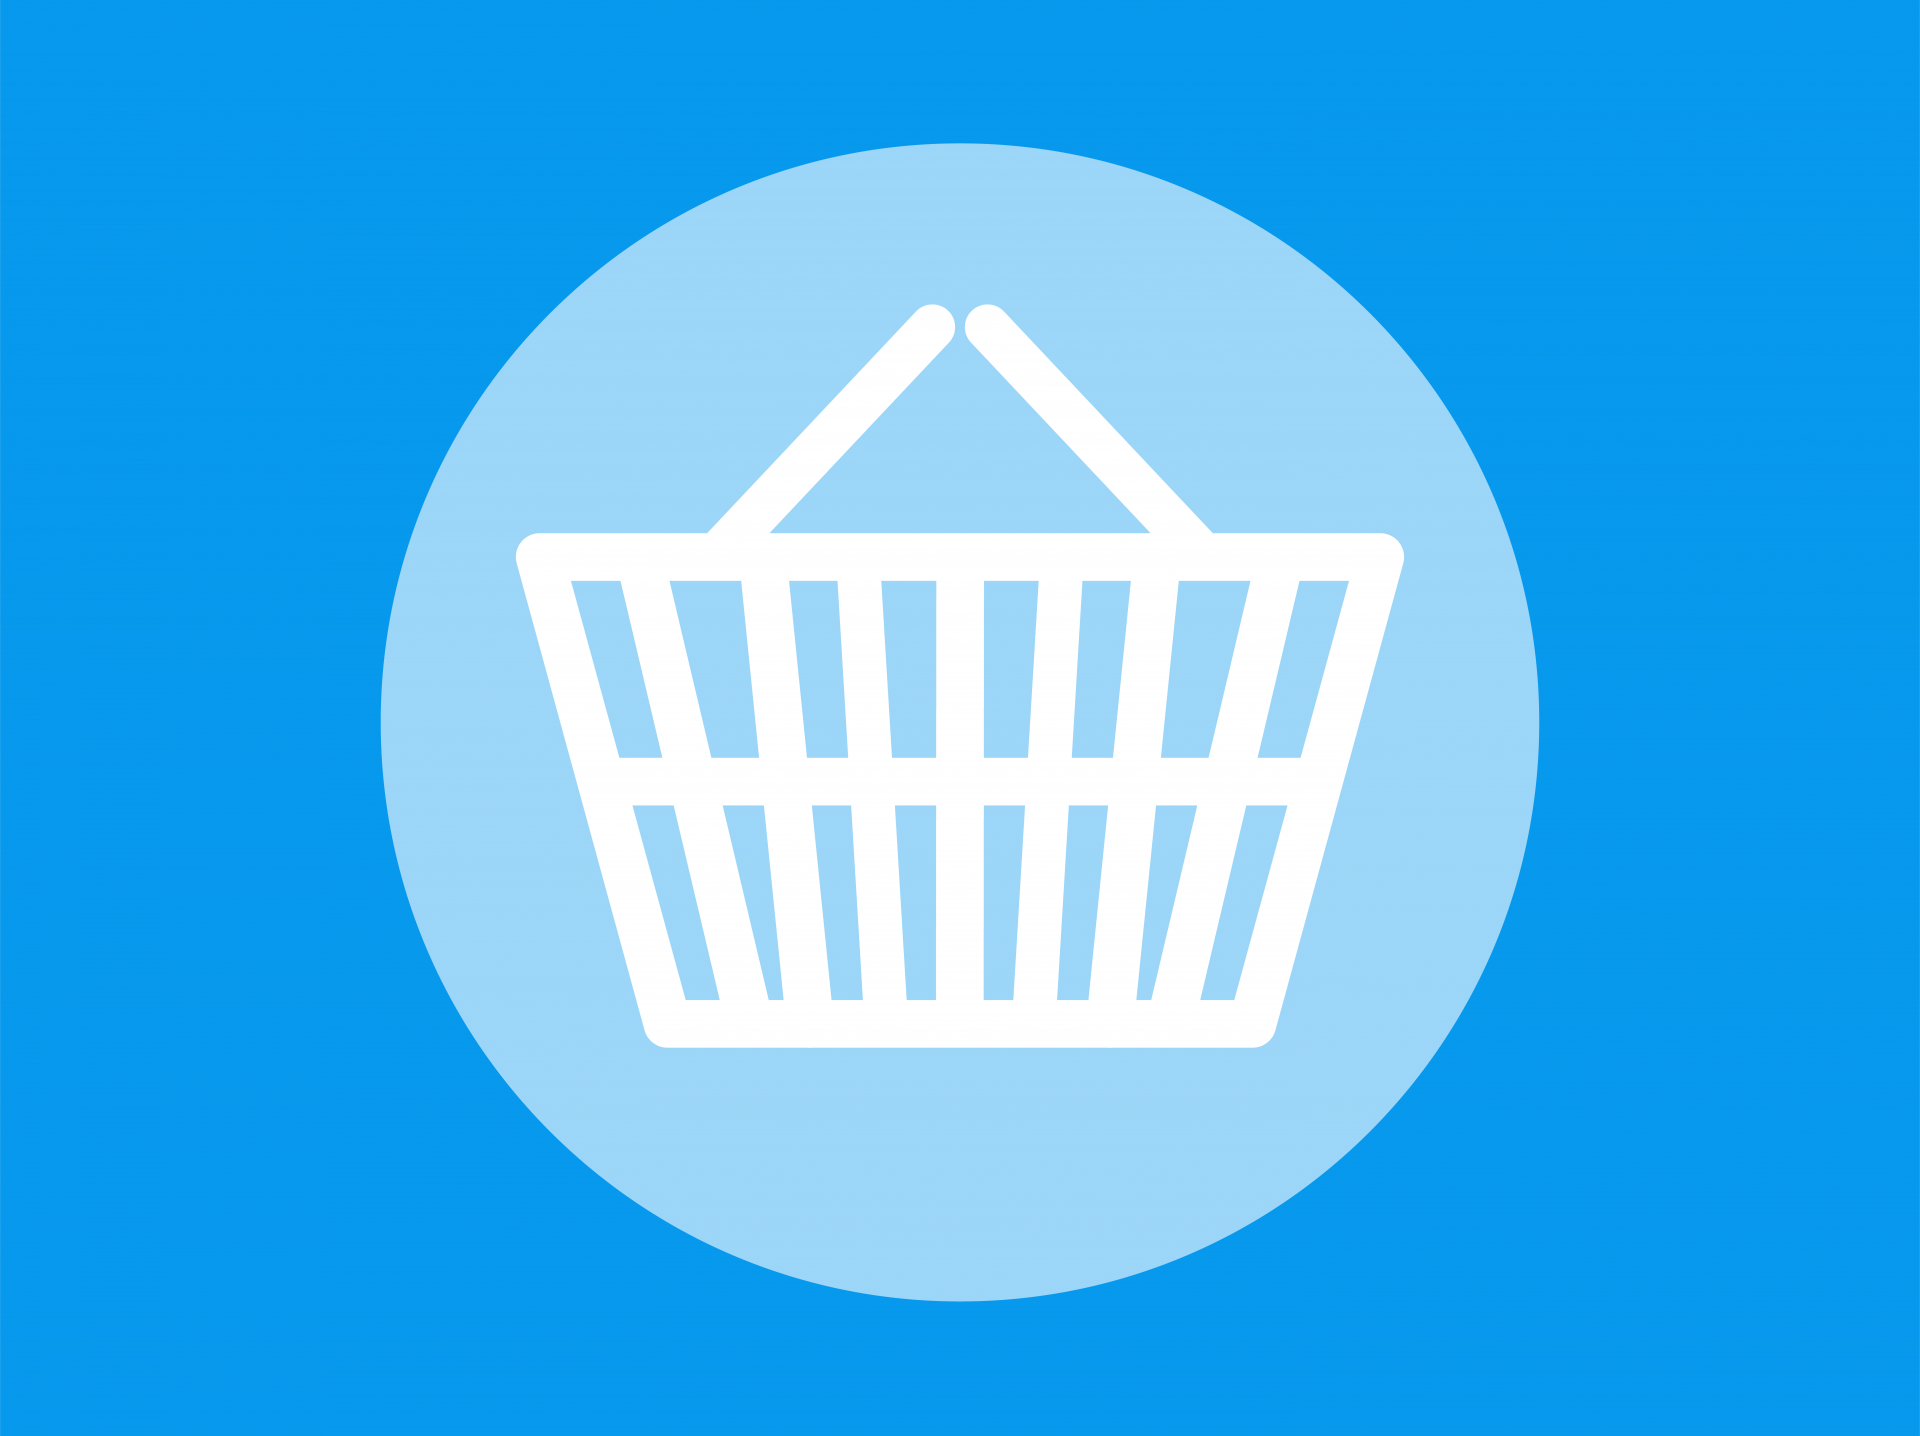 Shopping basket icon on blue background